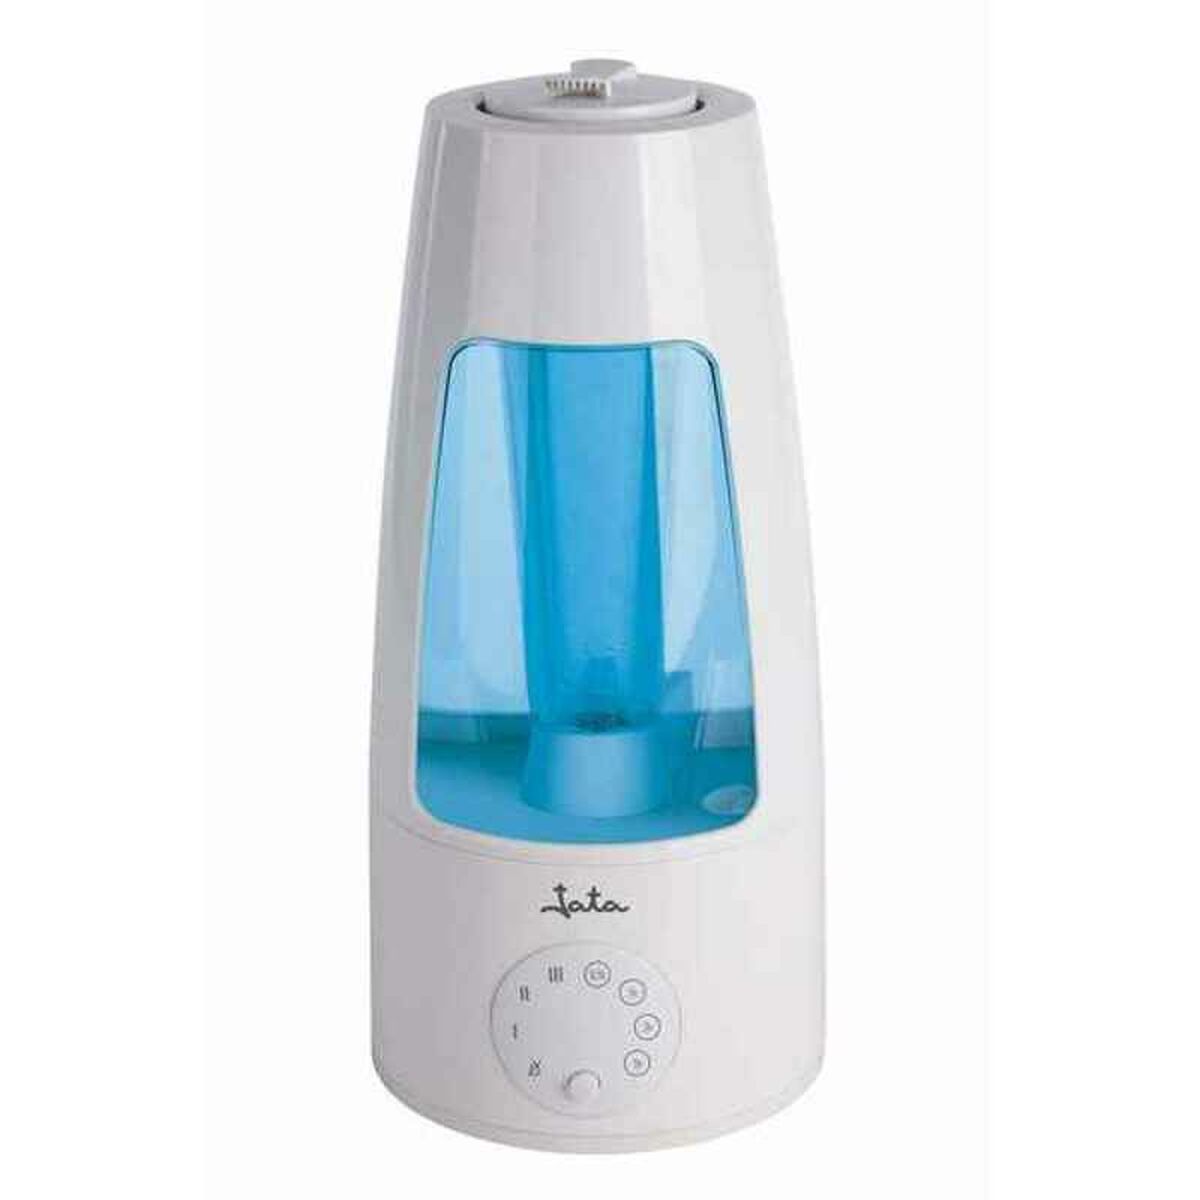 Humidifier JATA AR395 25 W 3 L Plastic (25 W)